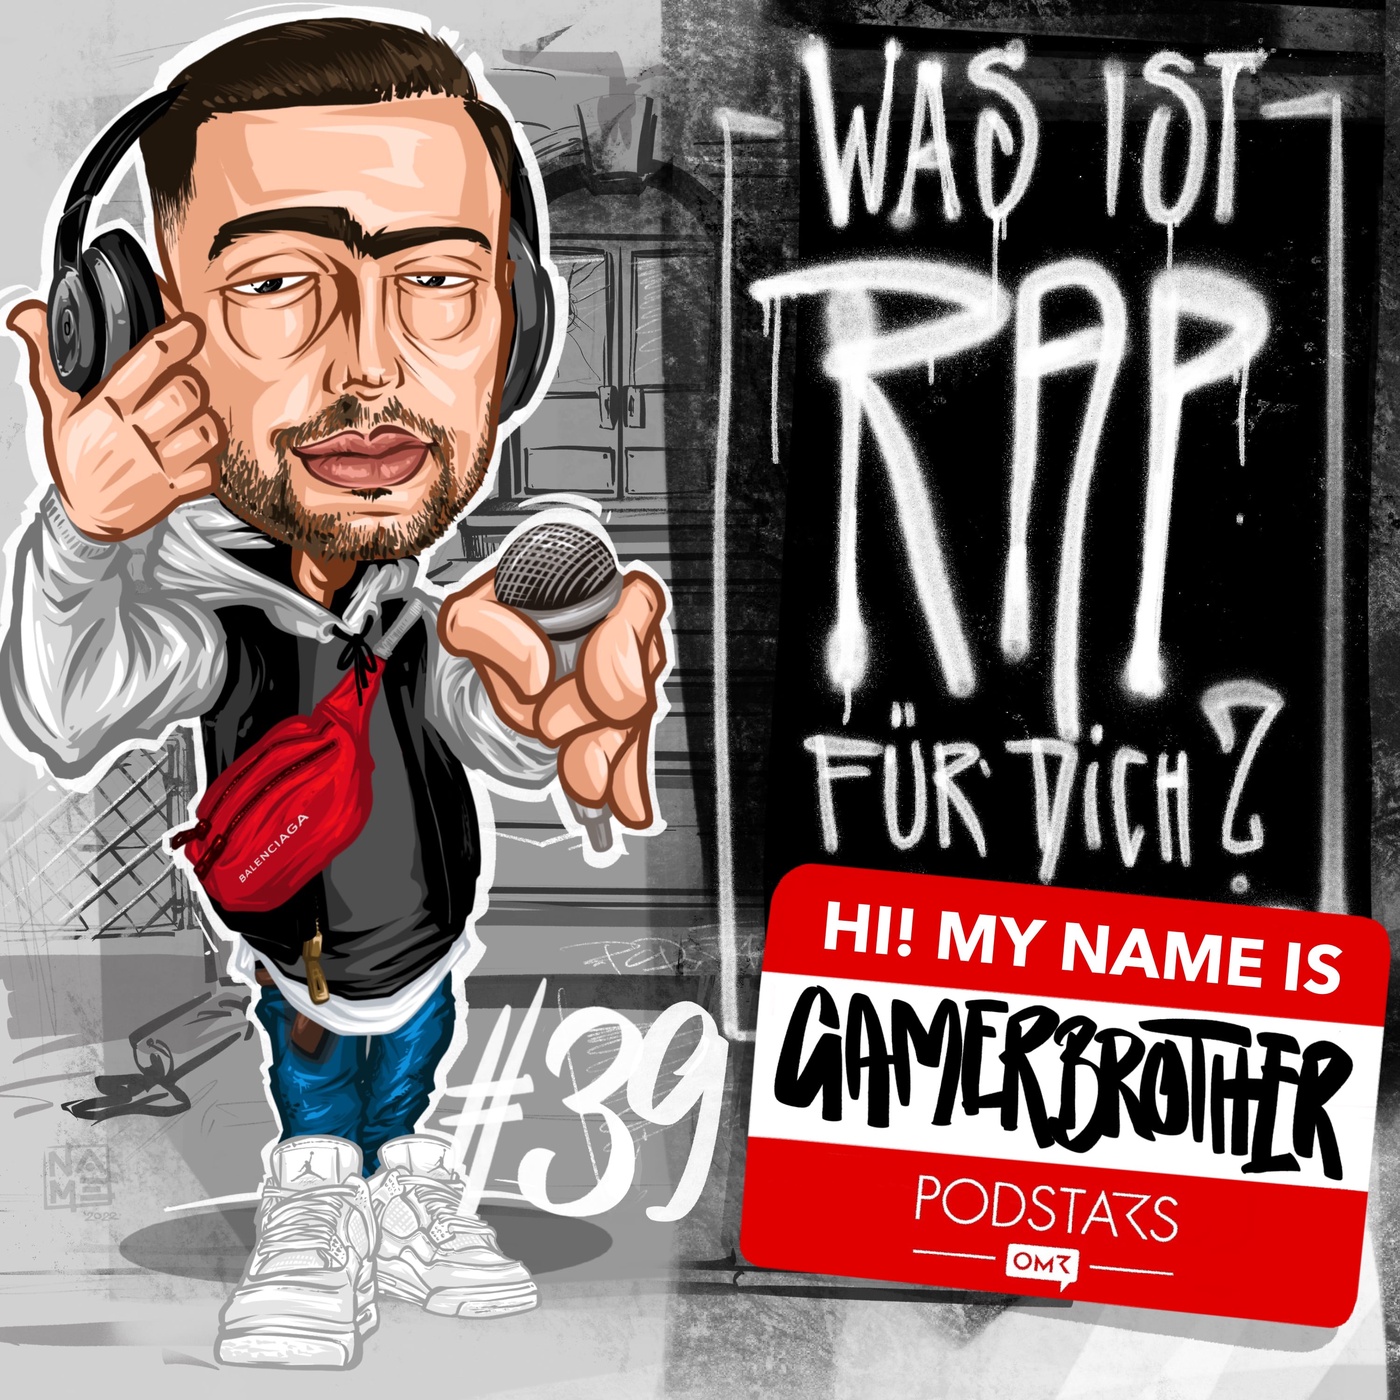 Gamerbrother - „Mit Rap fühlst du dich wie der größte Ficker“